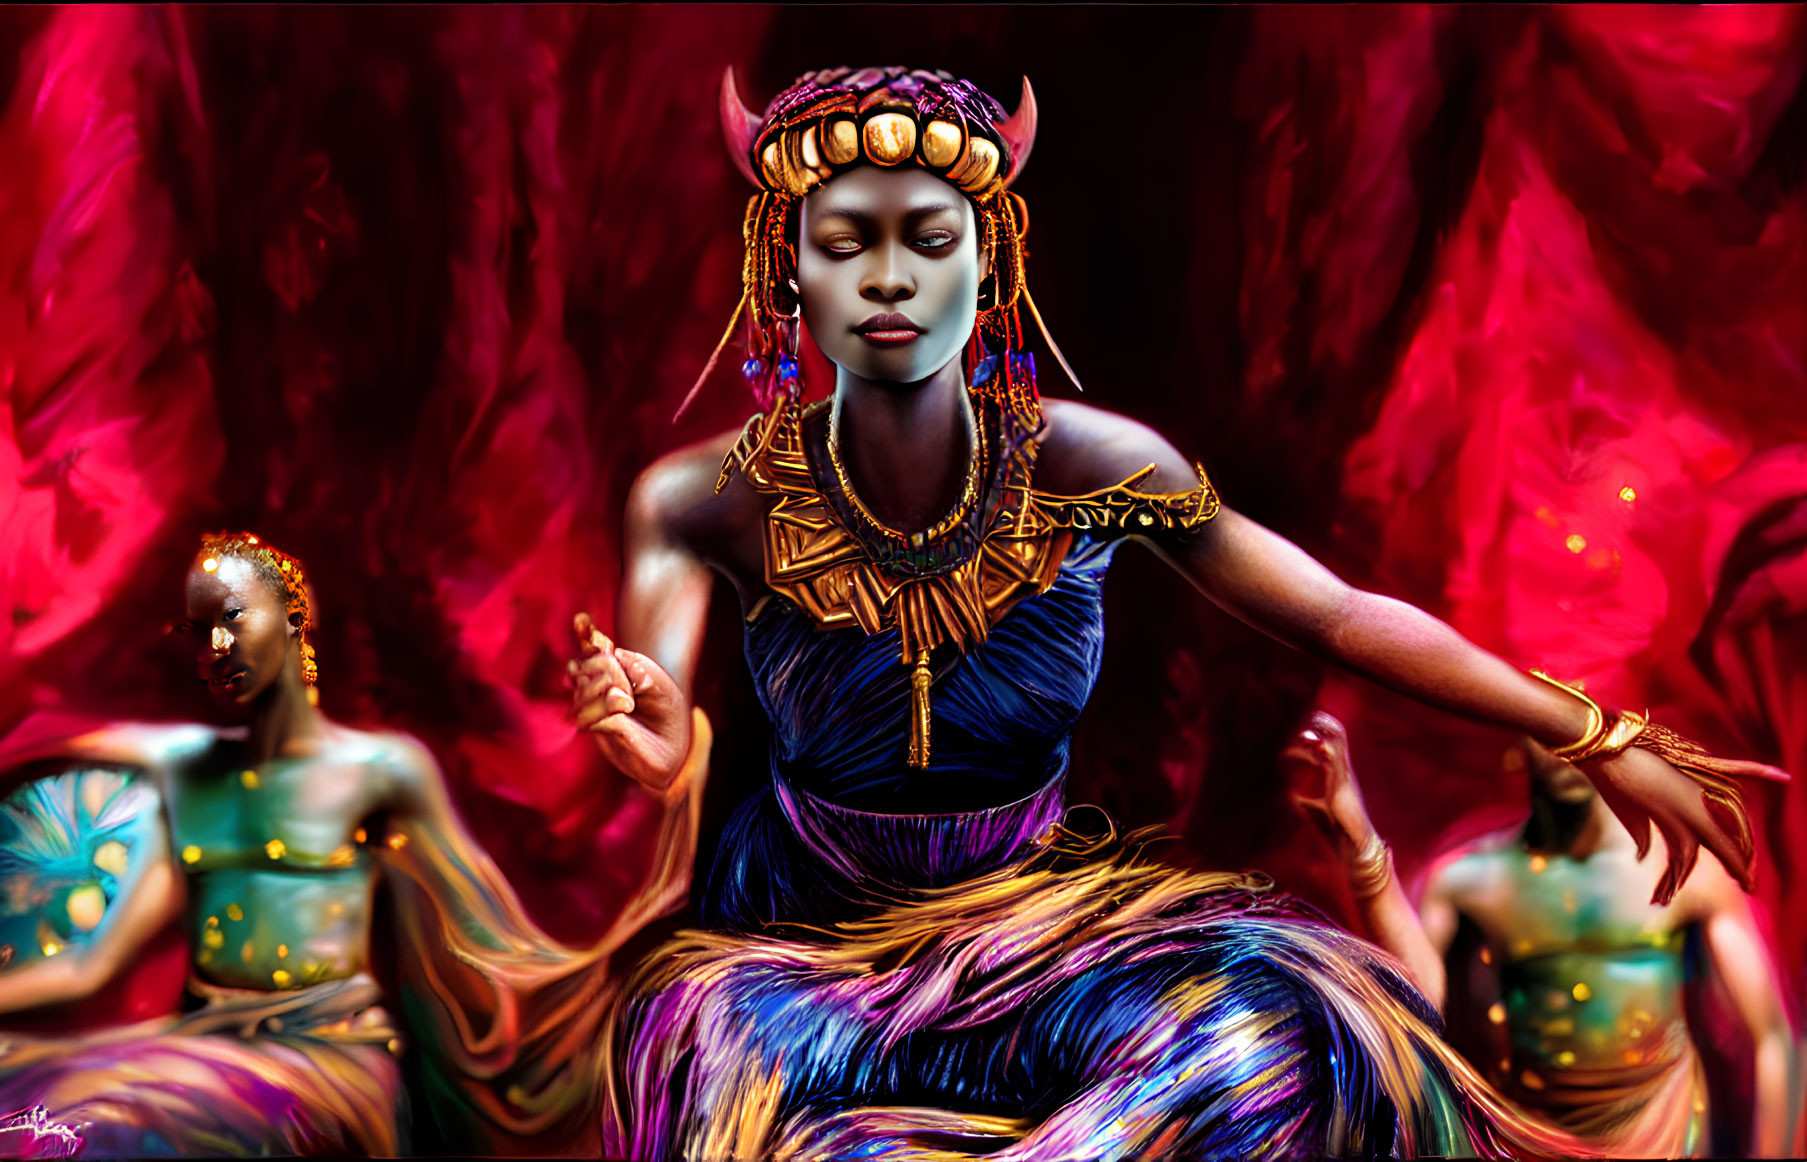 Digital Artwork: Three Women in African Attire on Red Background